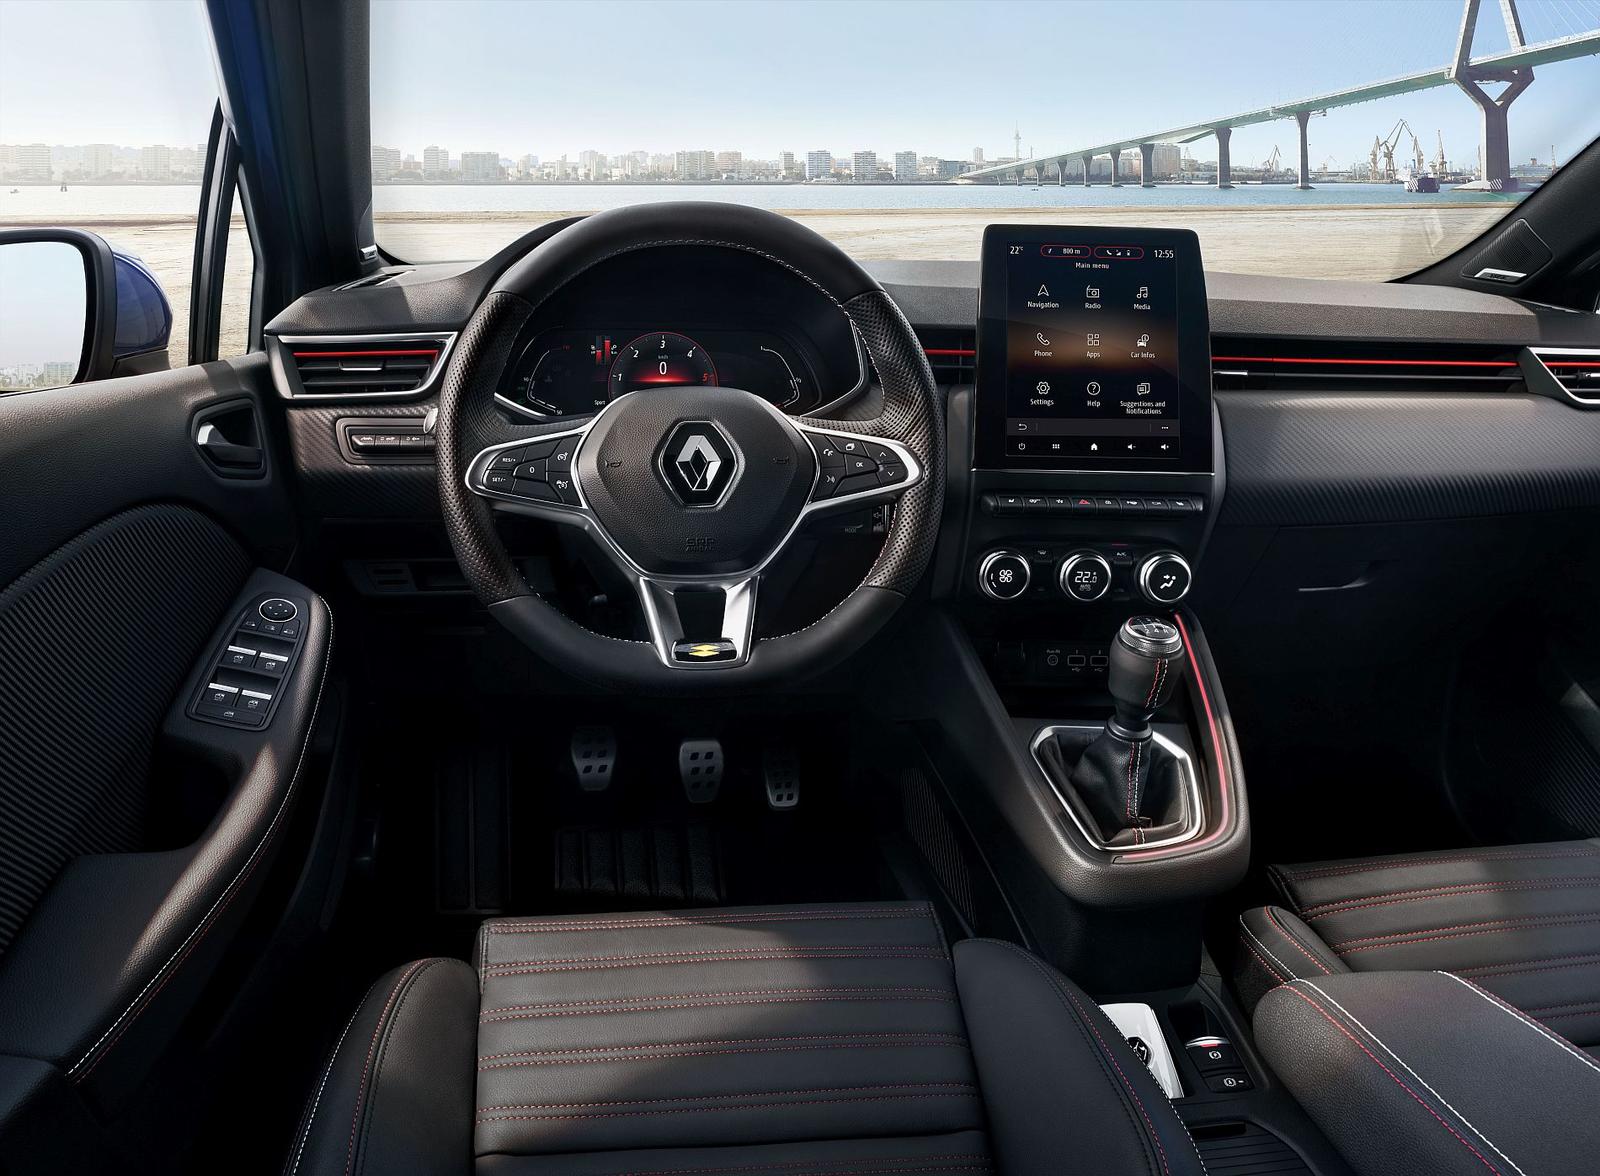 Renault Clio interior 2019 (2)